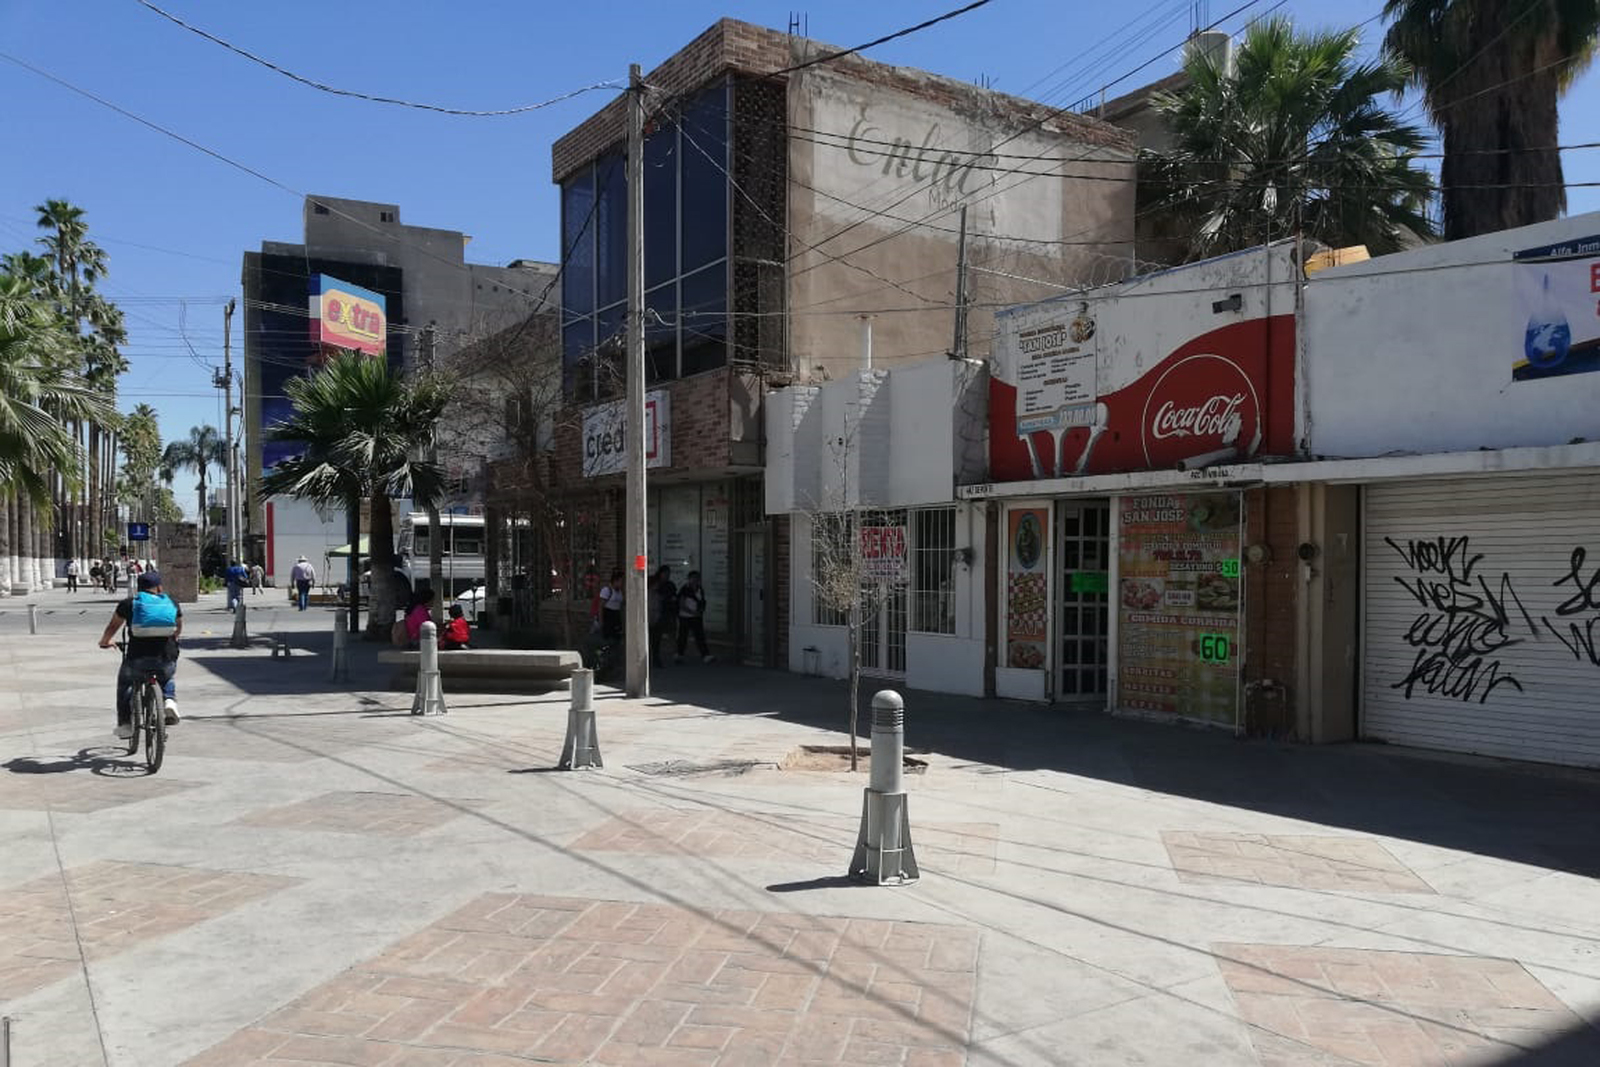 La zona cercana a la Plaza de Armas (imagen) tiene condiciones diferentes a la que se encuentra cerca de la Colón, en el área donde se encuentran los bares y restaurantes. (CUAUHTÉMOC TORRES)